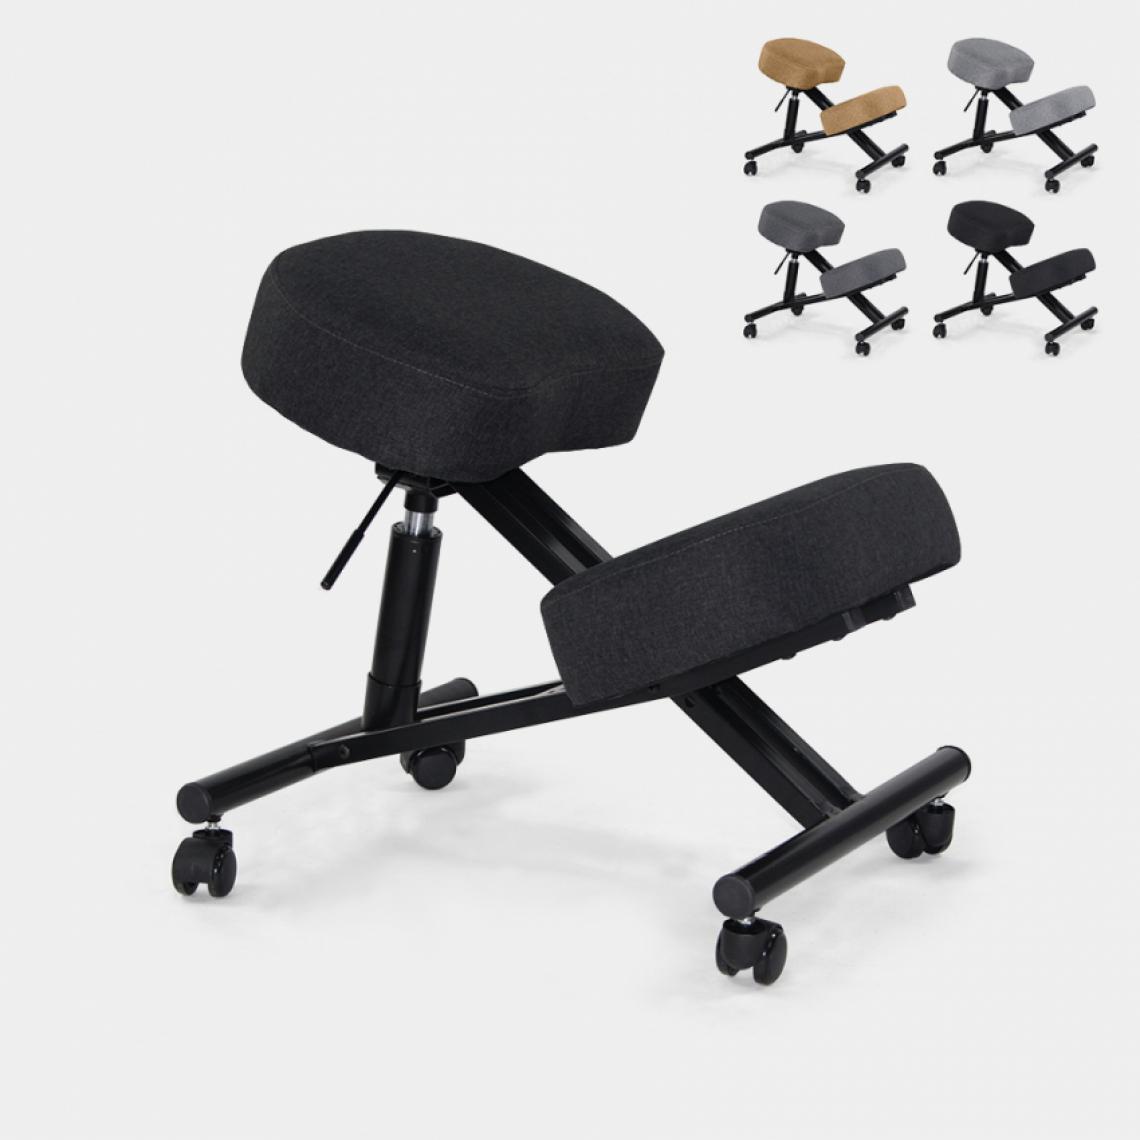 Bodyline - Healt And Massage - Chaise orthopédique suédoise ergonomique en tissu et en métal Balance Lux, Couleur: Noir - Chaises